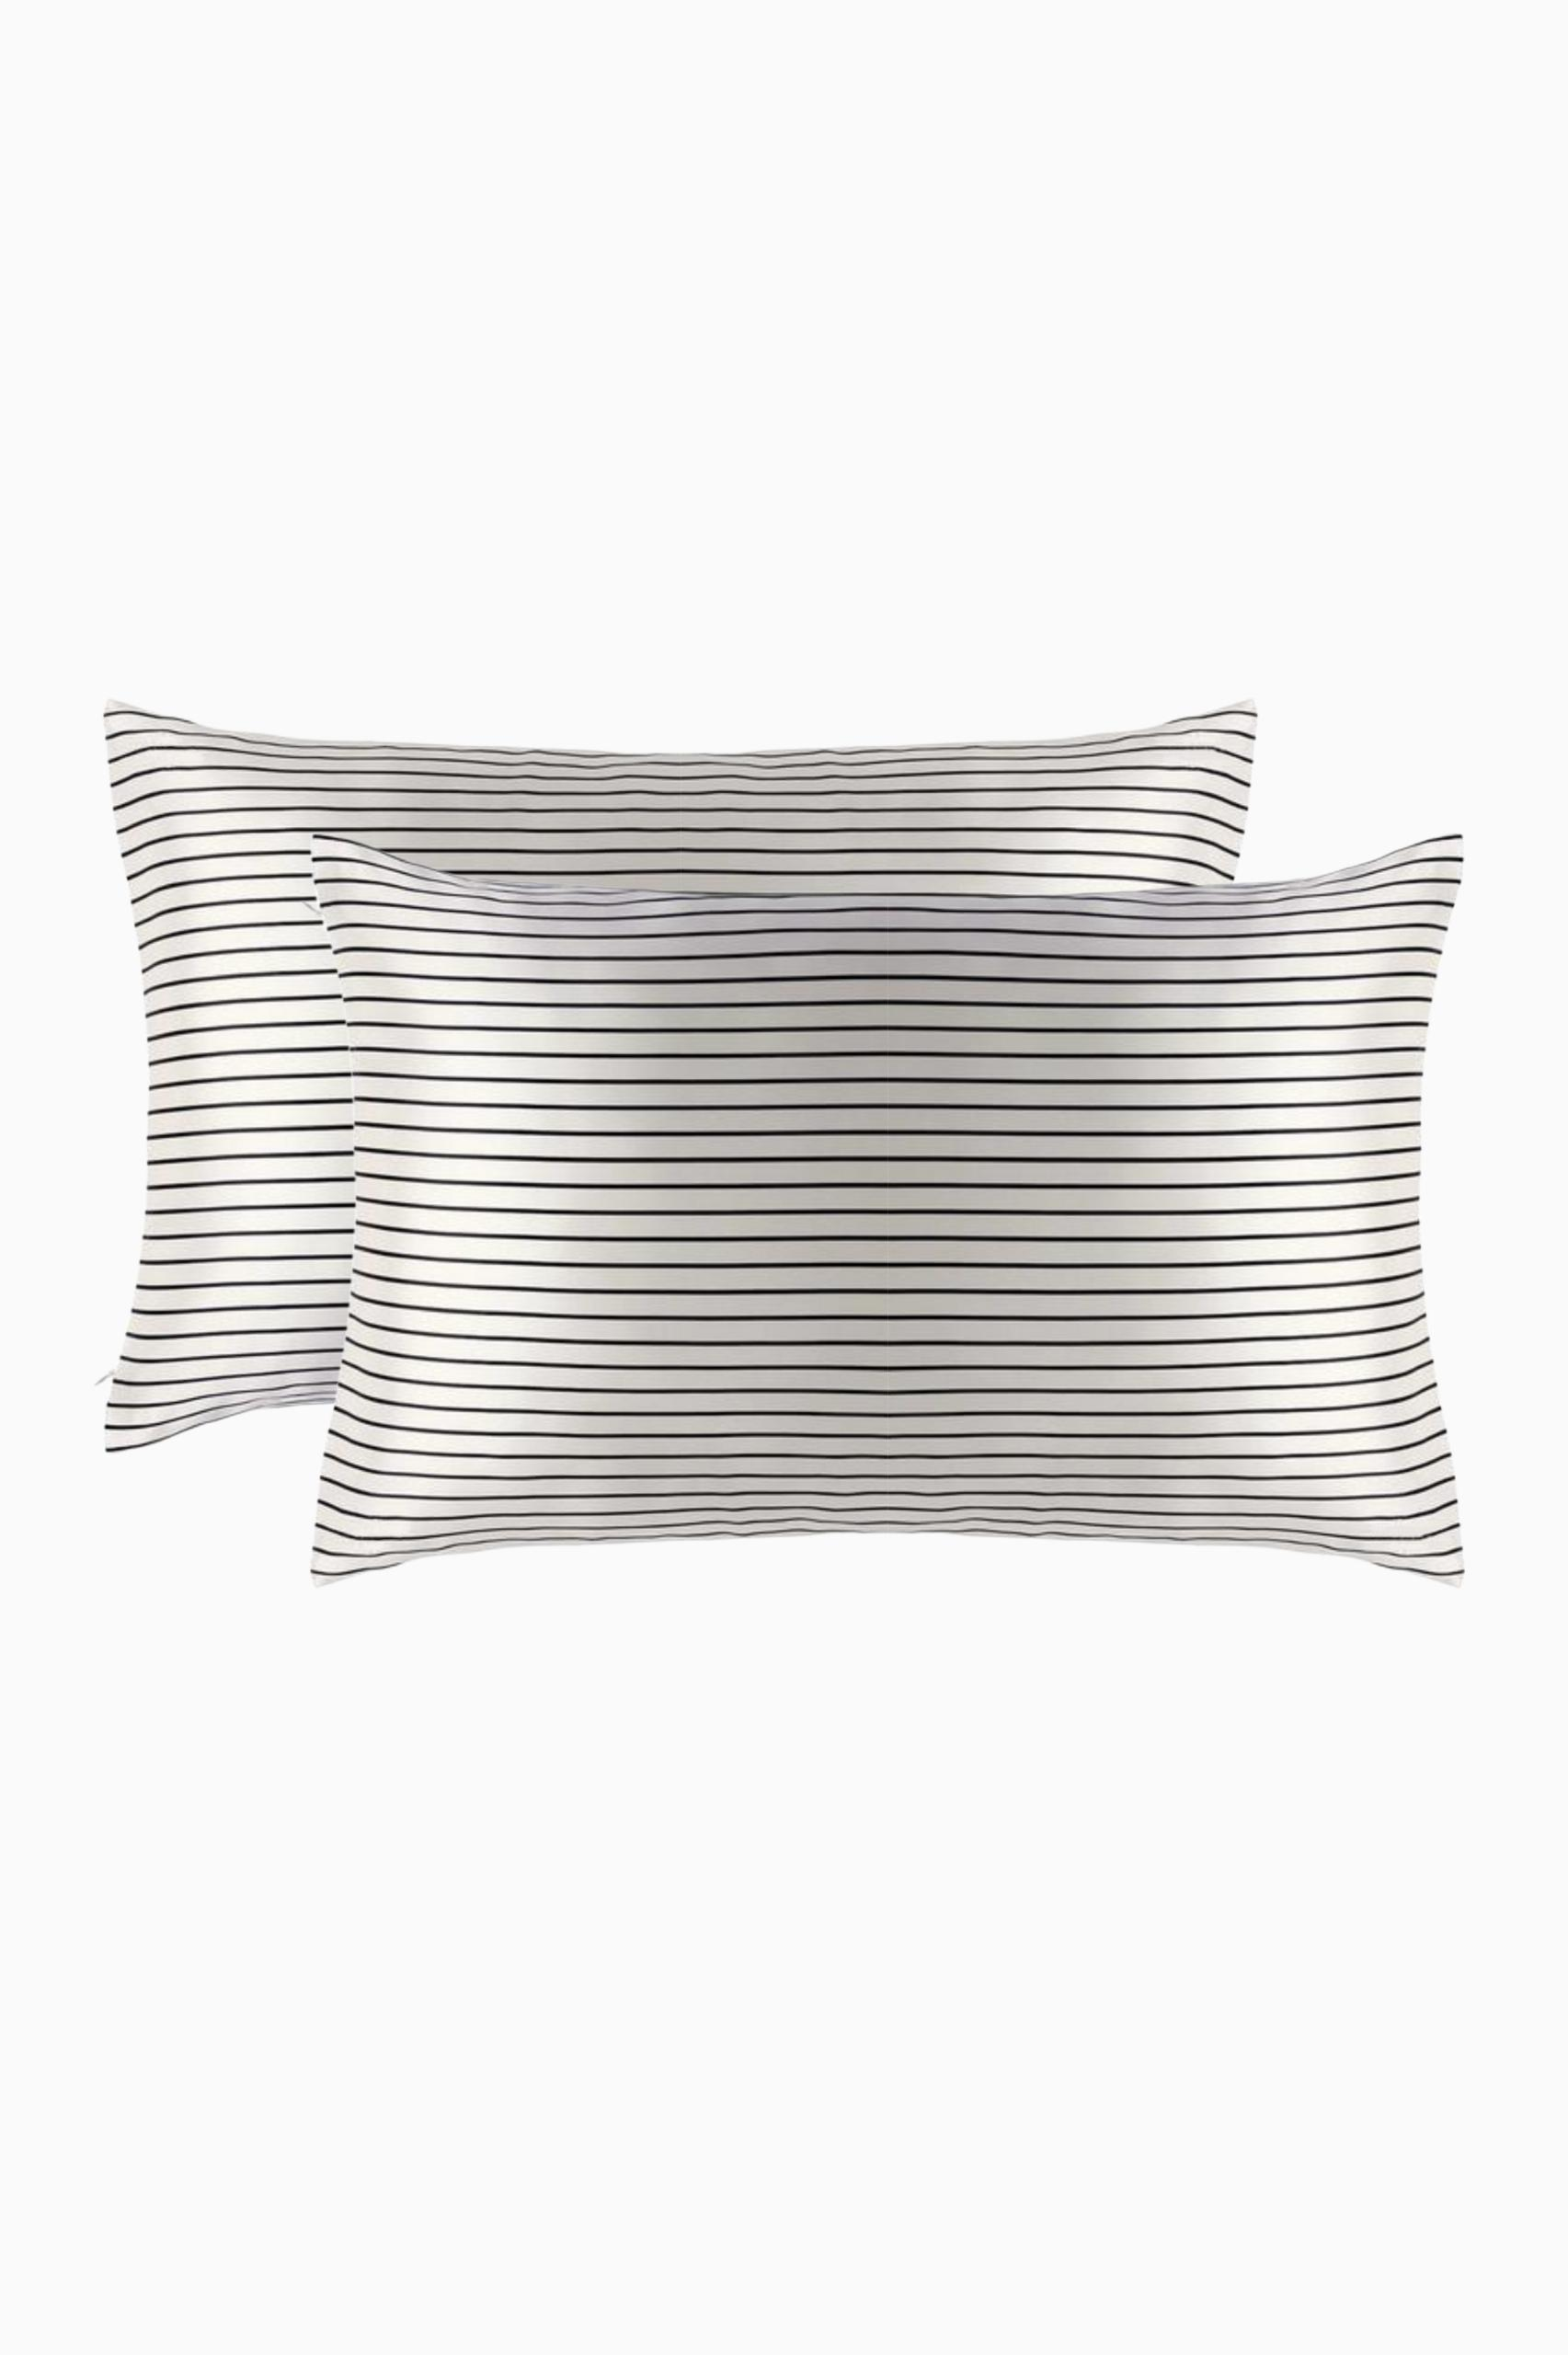 100% Silk Pillowcase Pair in Stripe